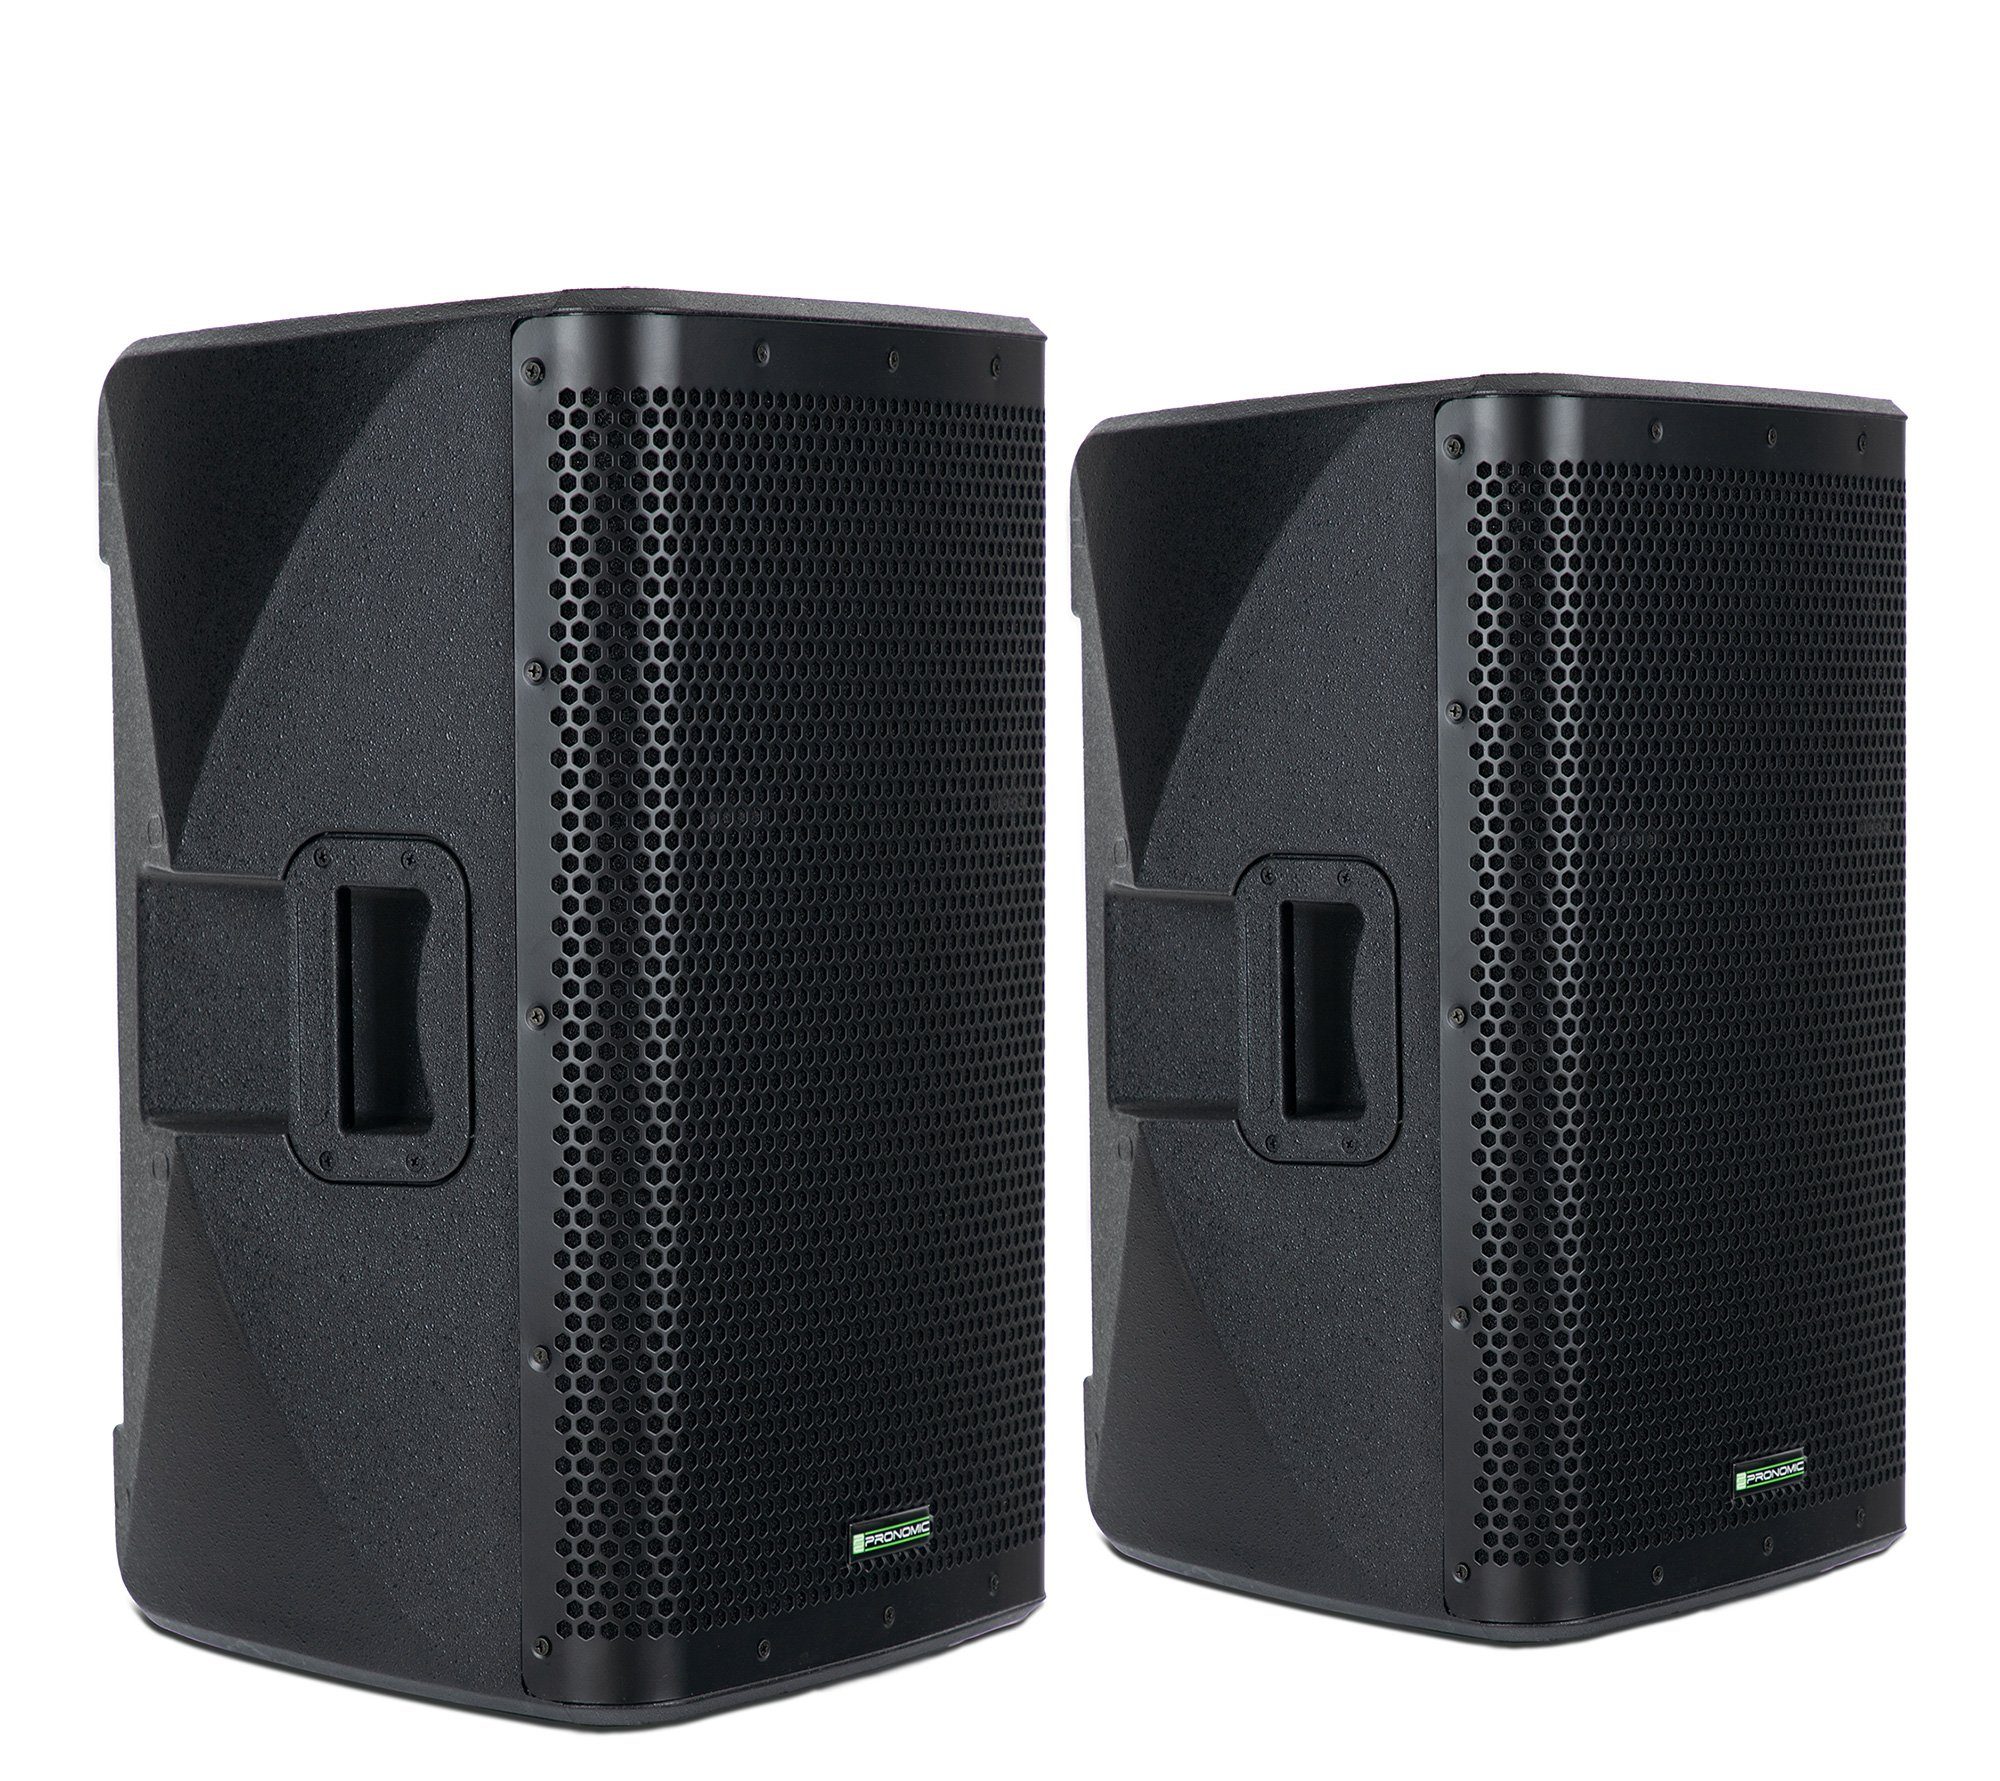 Pronomic Paar C-212 MA - Aktive 2-Wege Bi-Amp Box mit 2 Kanälen - 12" Woofer  2.0 Lautsprecher (Bluetooth, 500 W, Bluetooth-Empfänger und DSP-Presets)